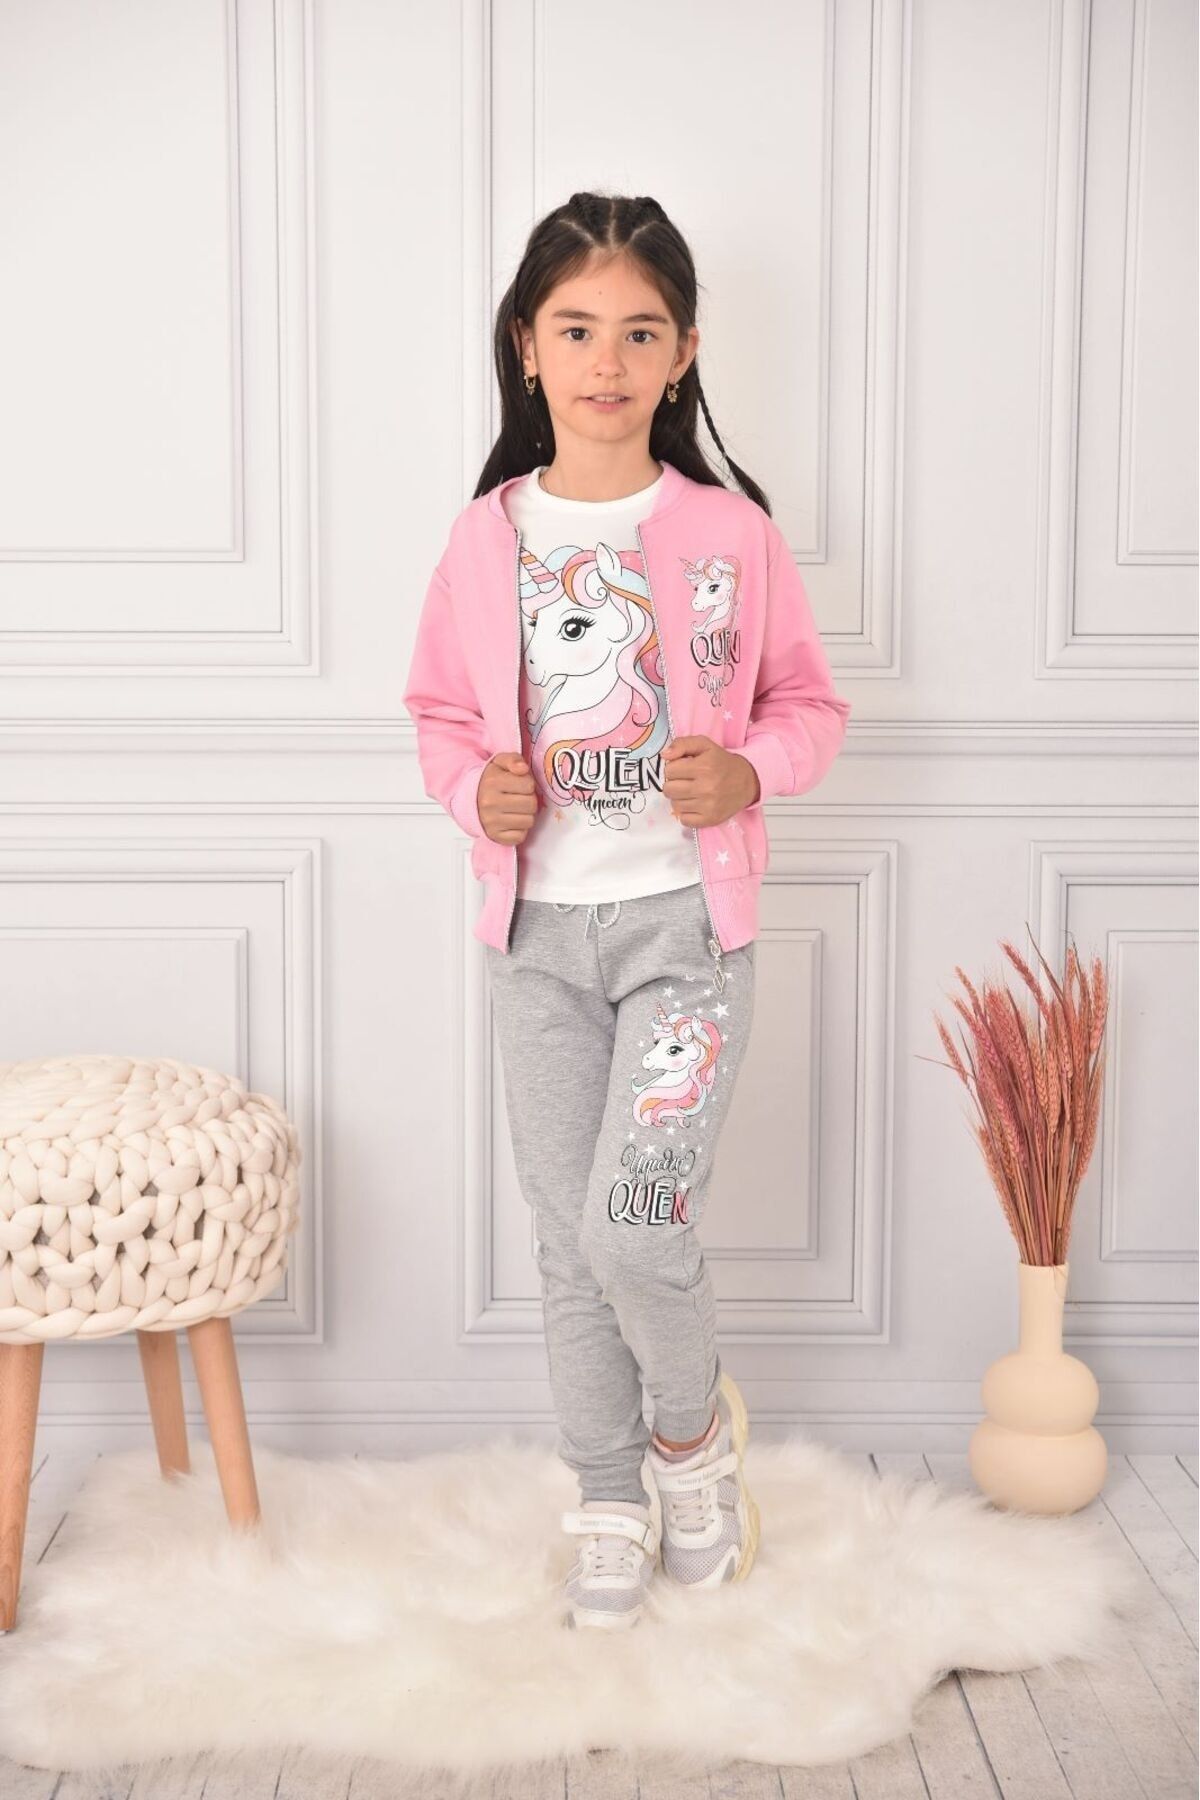 PICCALİLLY Kız Çocuk Ünicorn Desenli Hırka - Sweatshirt - Tayt Penye 3'lü Takım